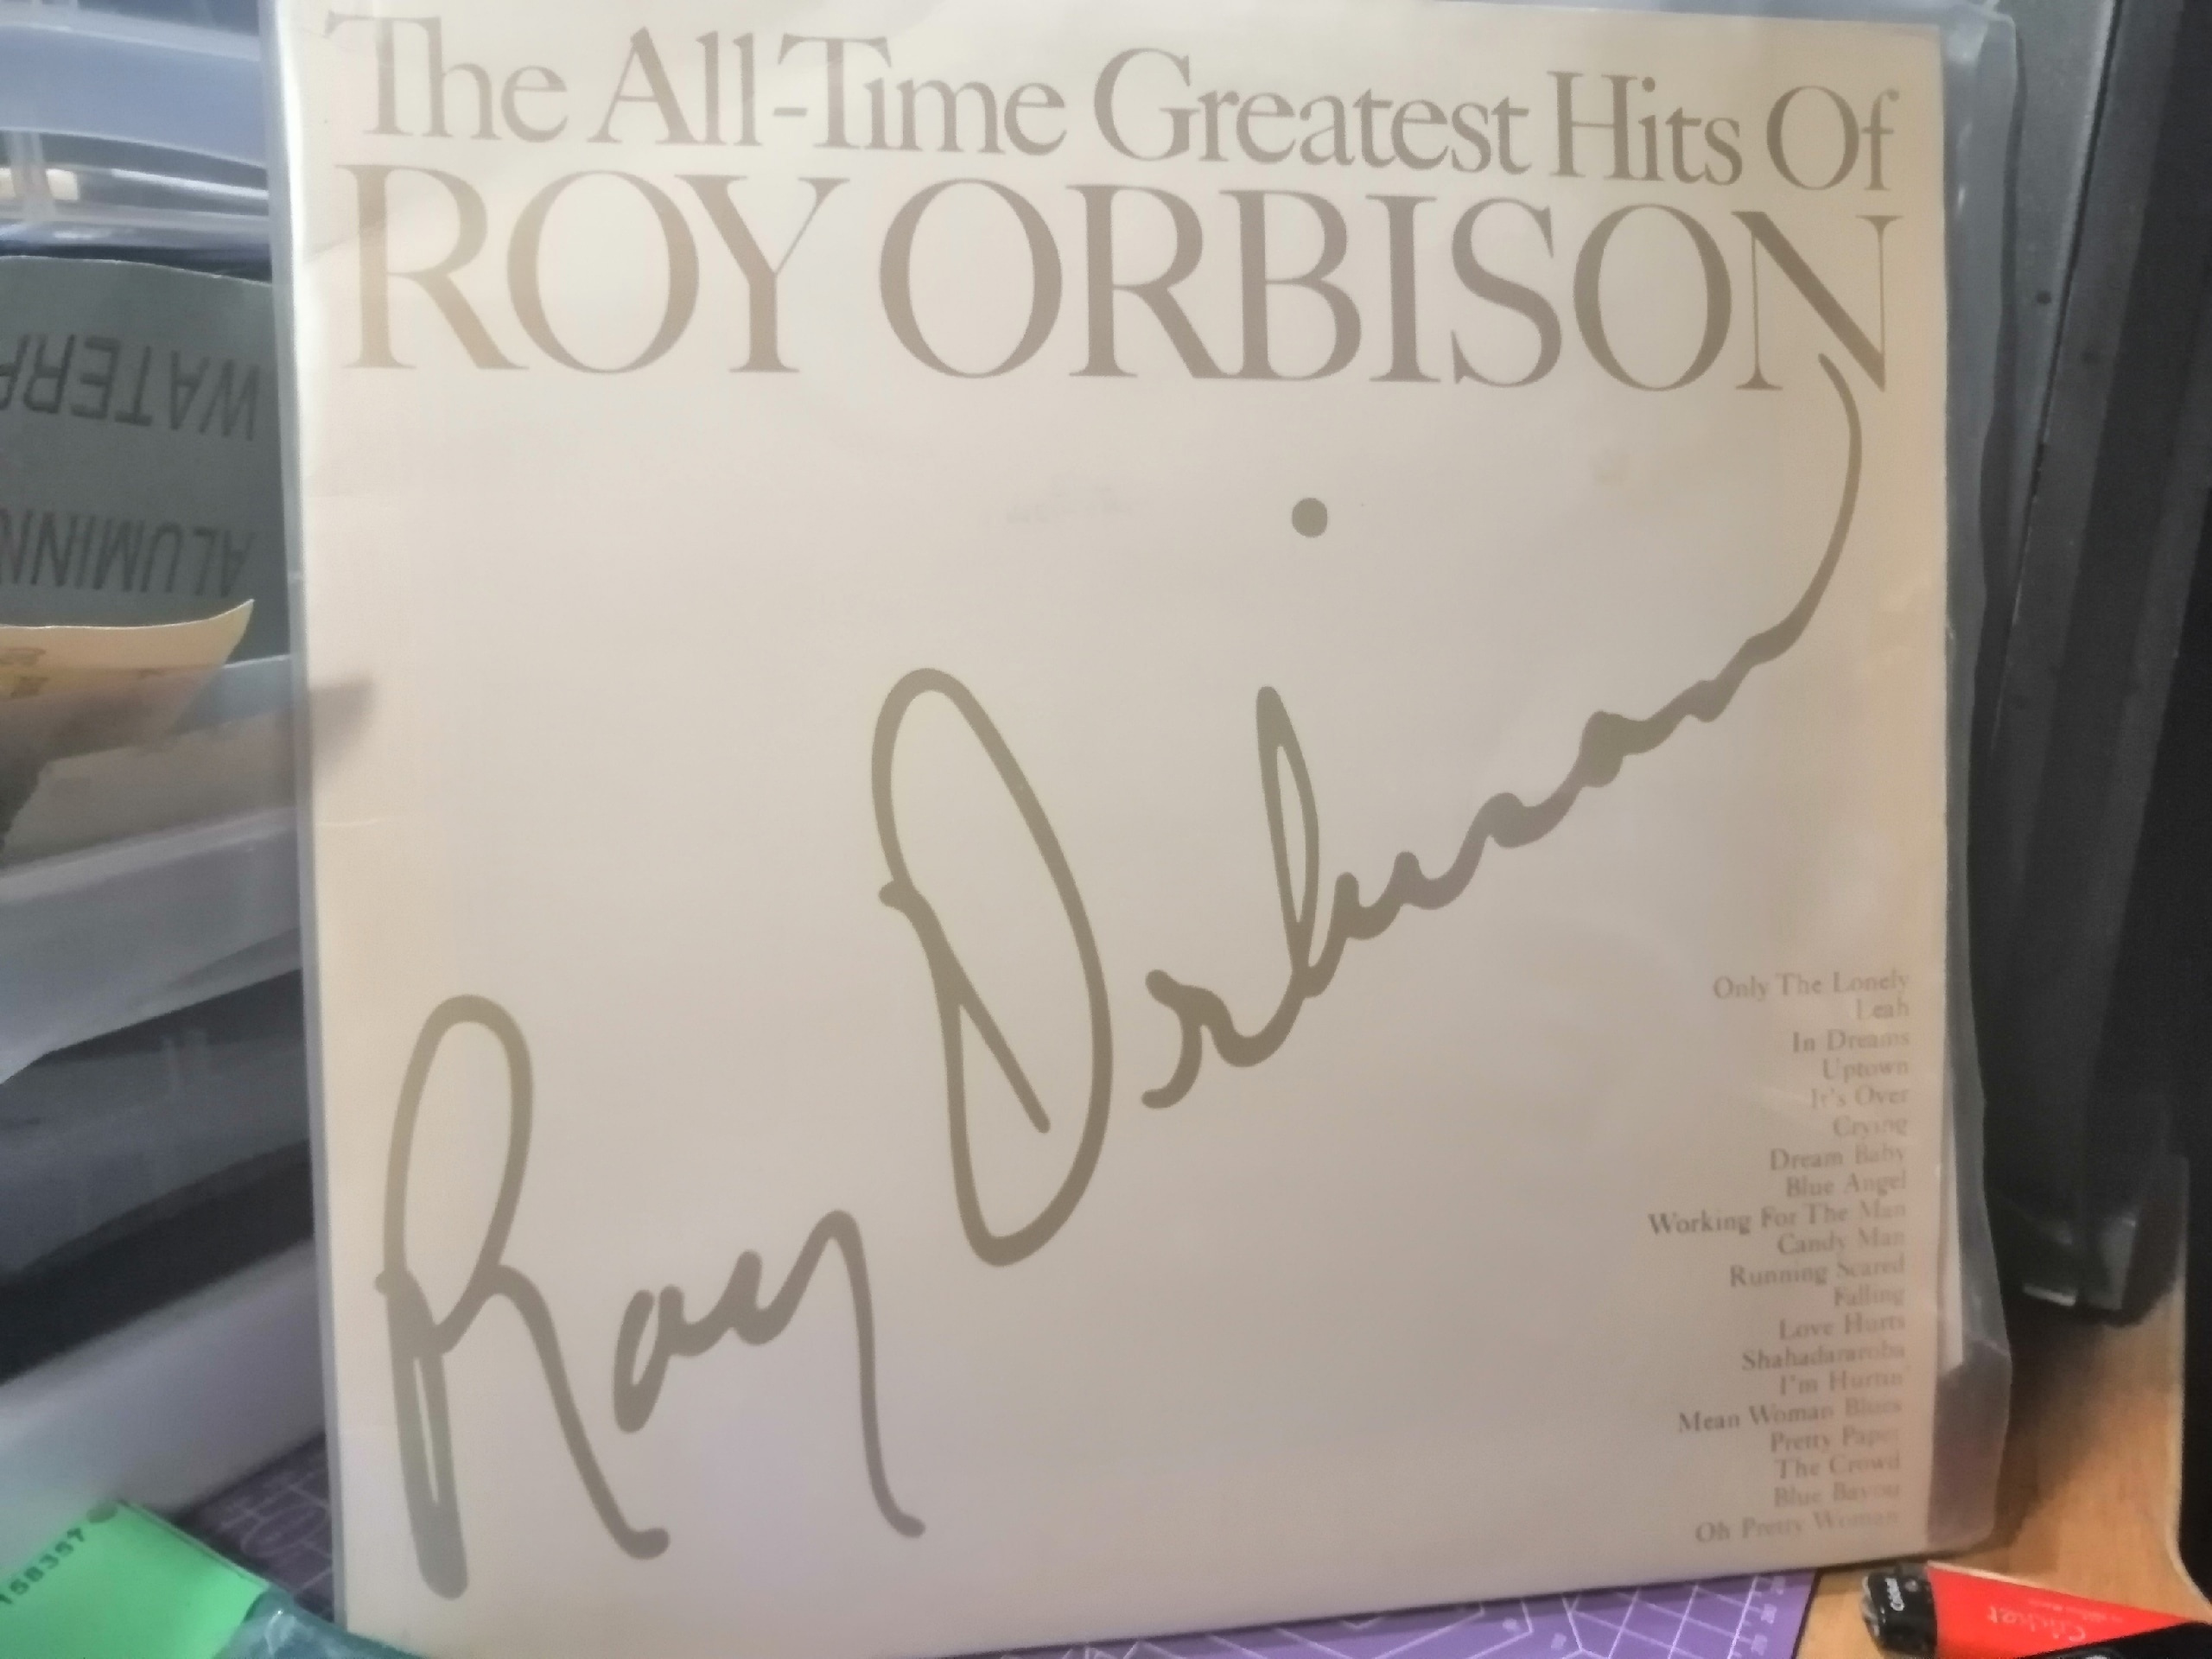 Если не представляете, кто такой Рой Орбисон, то вспомните главную песню из фильма «Красотка». Это он